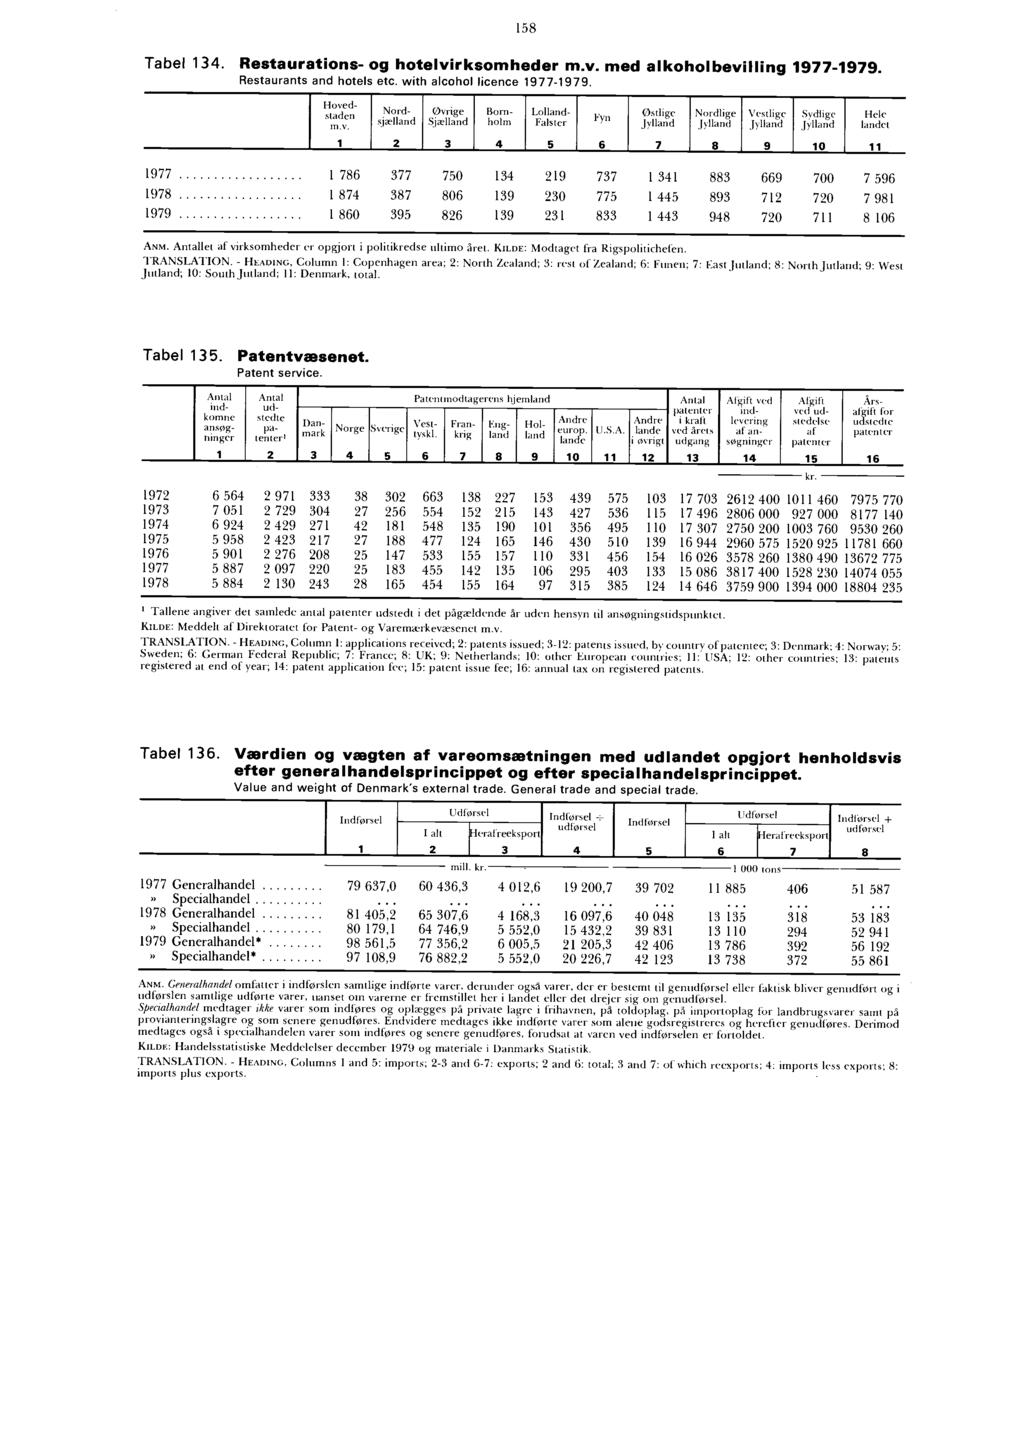 Tabel 134. Restaurations- og hotelvirksomheder m.v. med alkoholbevilling 1977-1979. Restaurants and hotels etc. with alcohol licence 1977-1979.